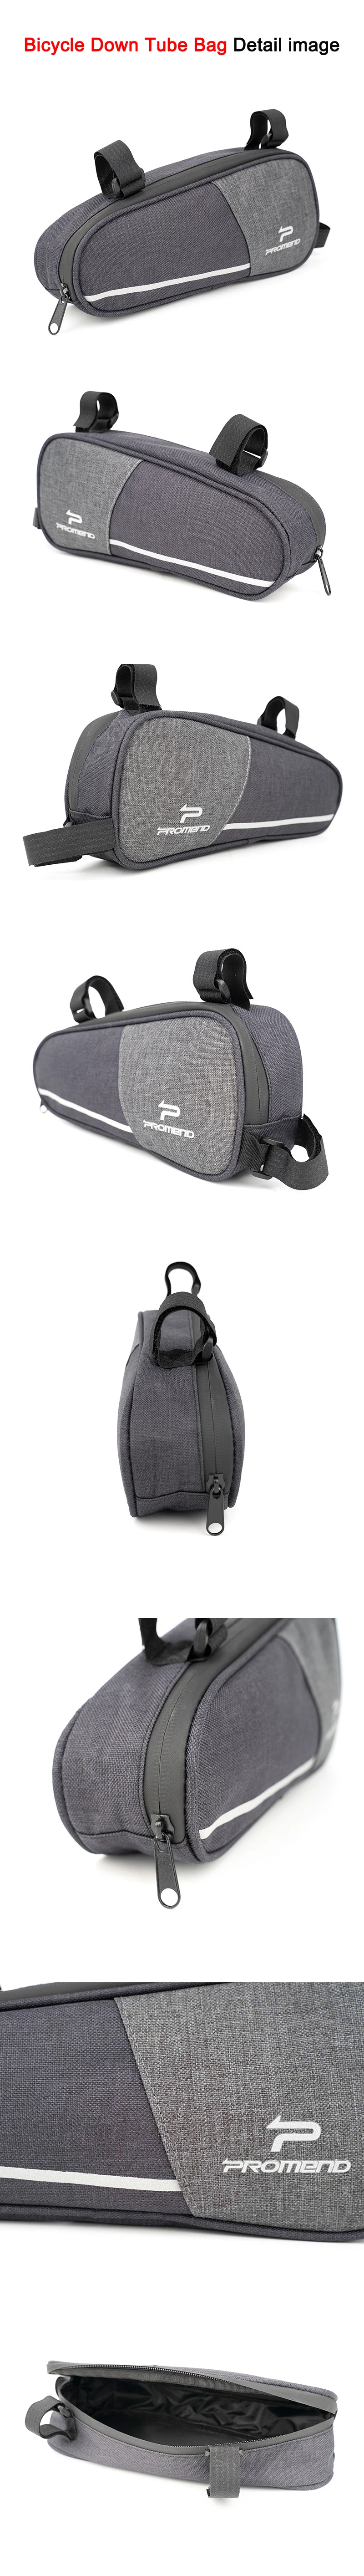 PROMEND велосипедная верхняя труба сумка/пуховая Труба Сумка водонепроницаемая велосипедная сумка треугольная сумка держатель рамы Аксессуары для велосипеда